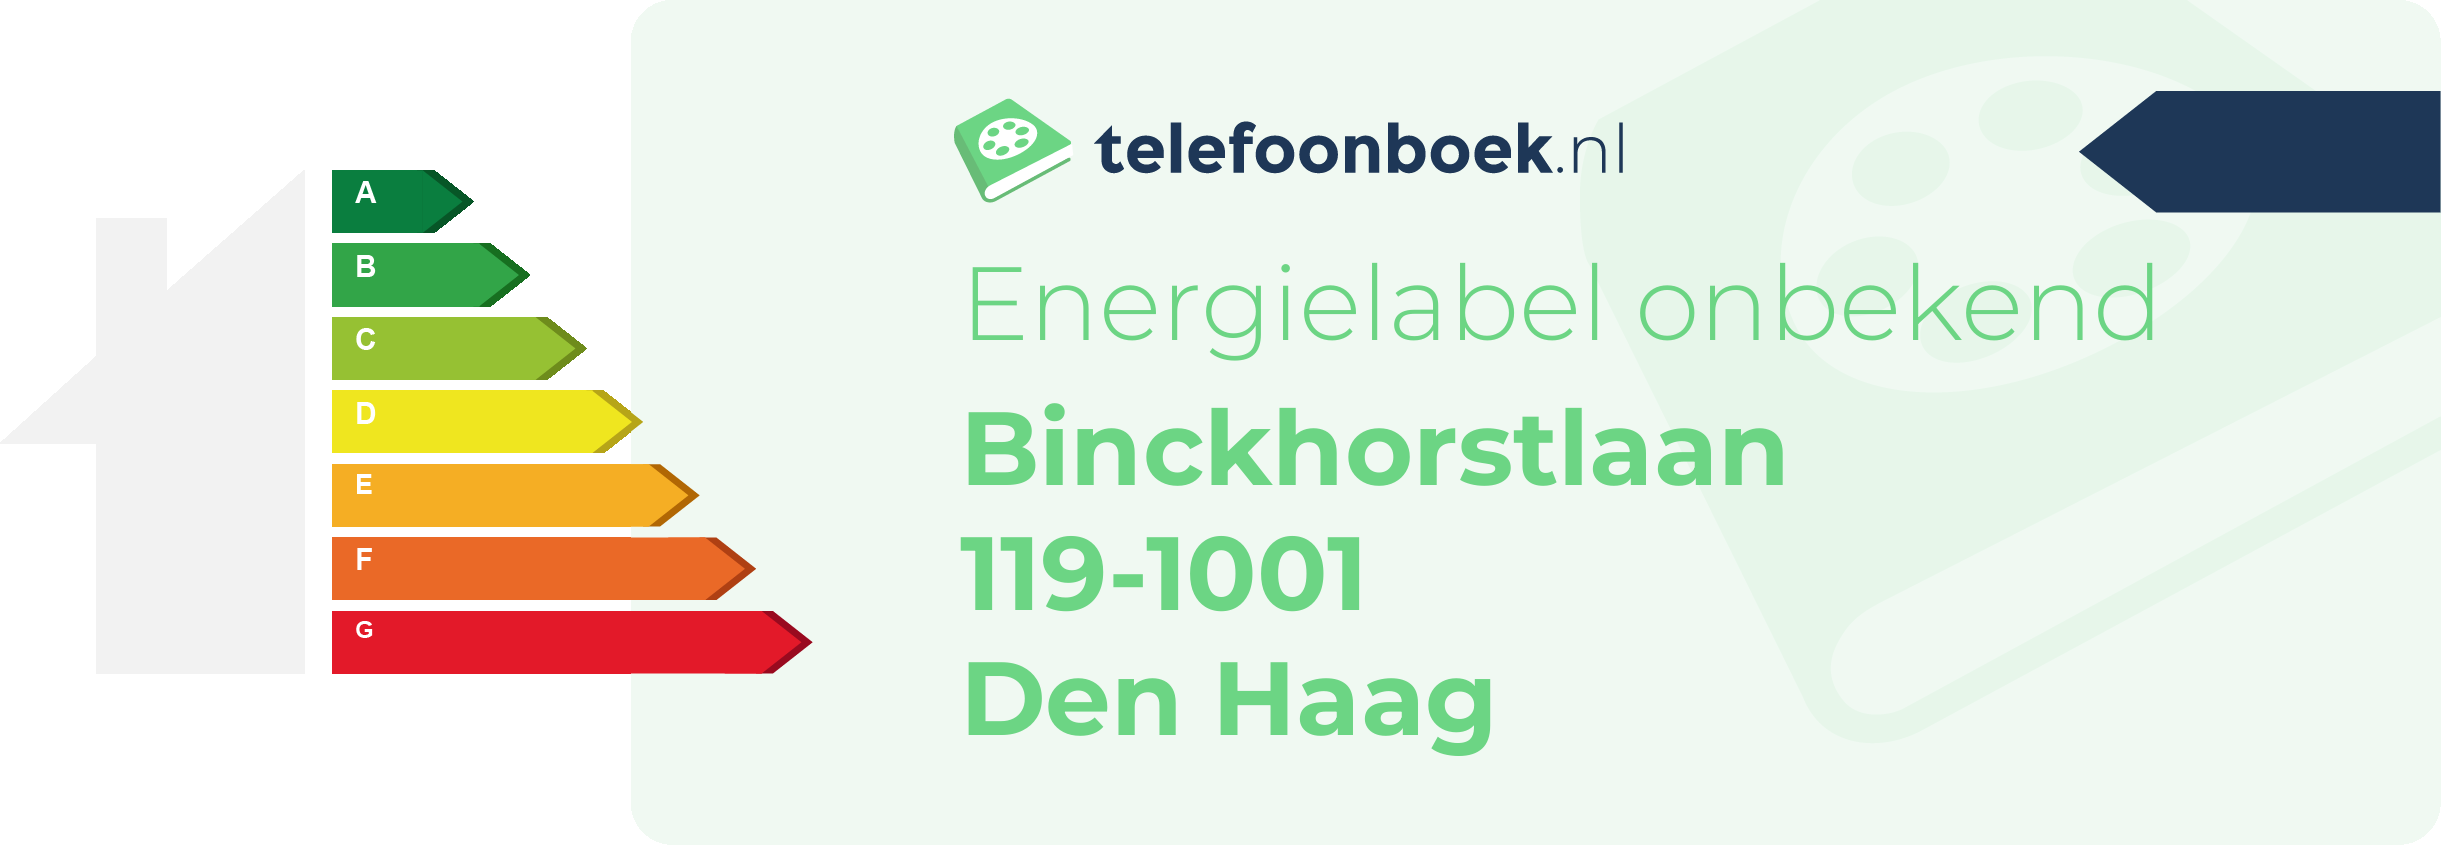 Energielabel Binckhorstlaan 119-1001 Den Haag